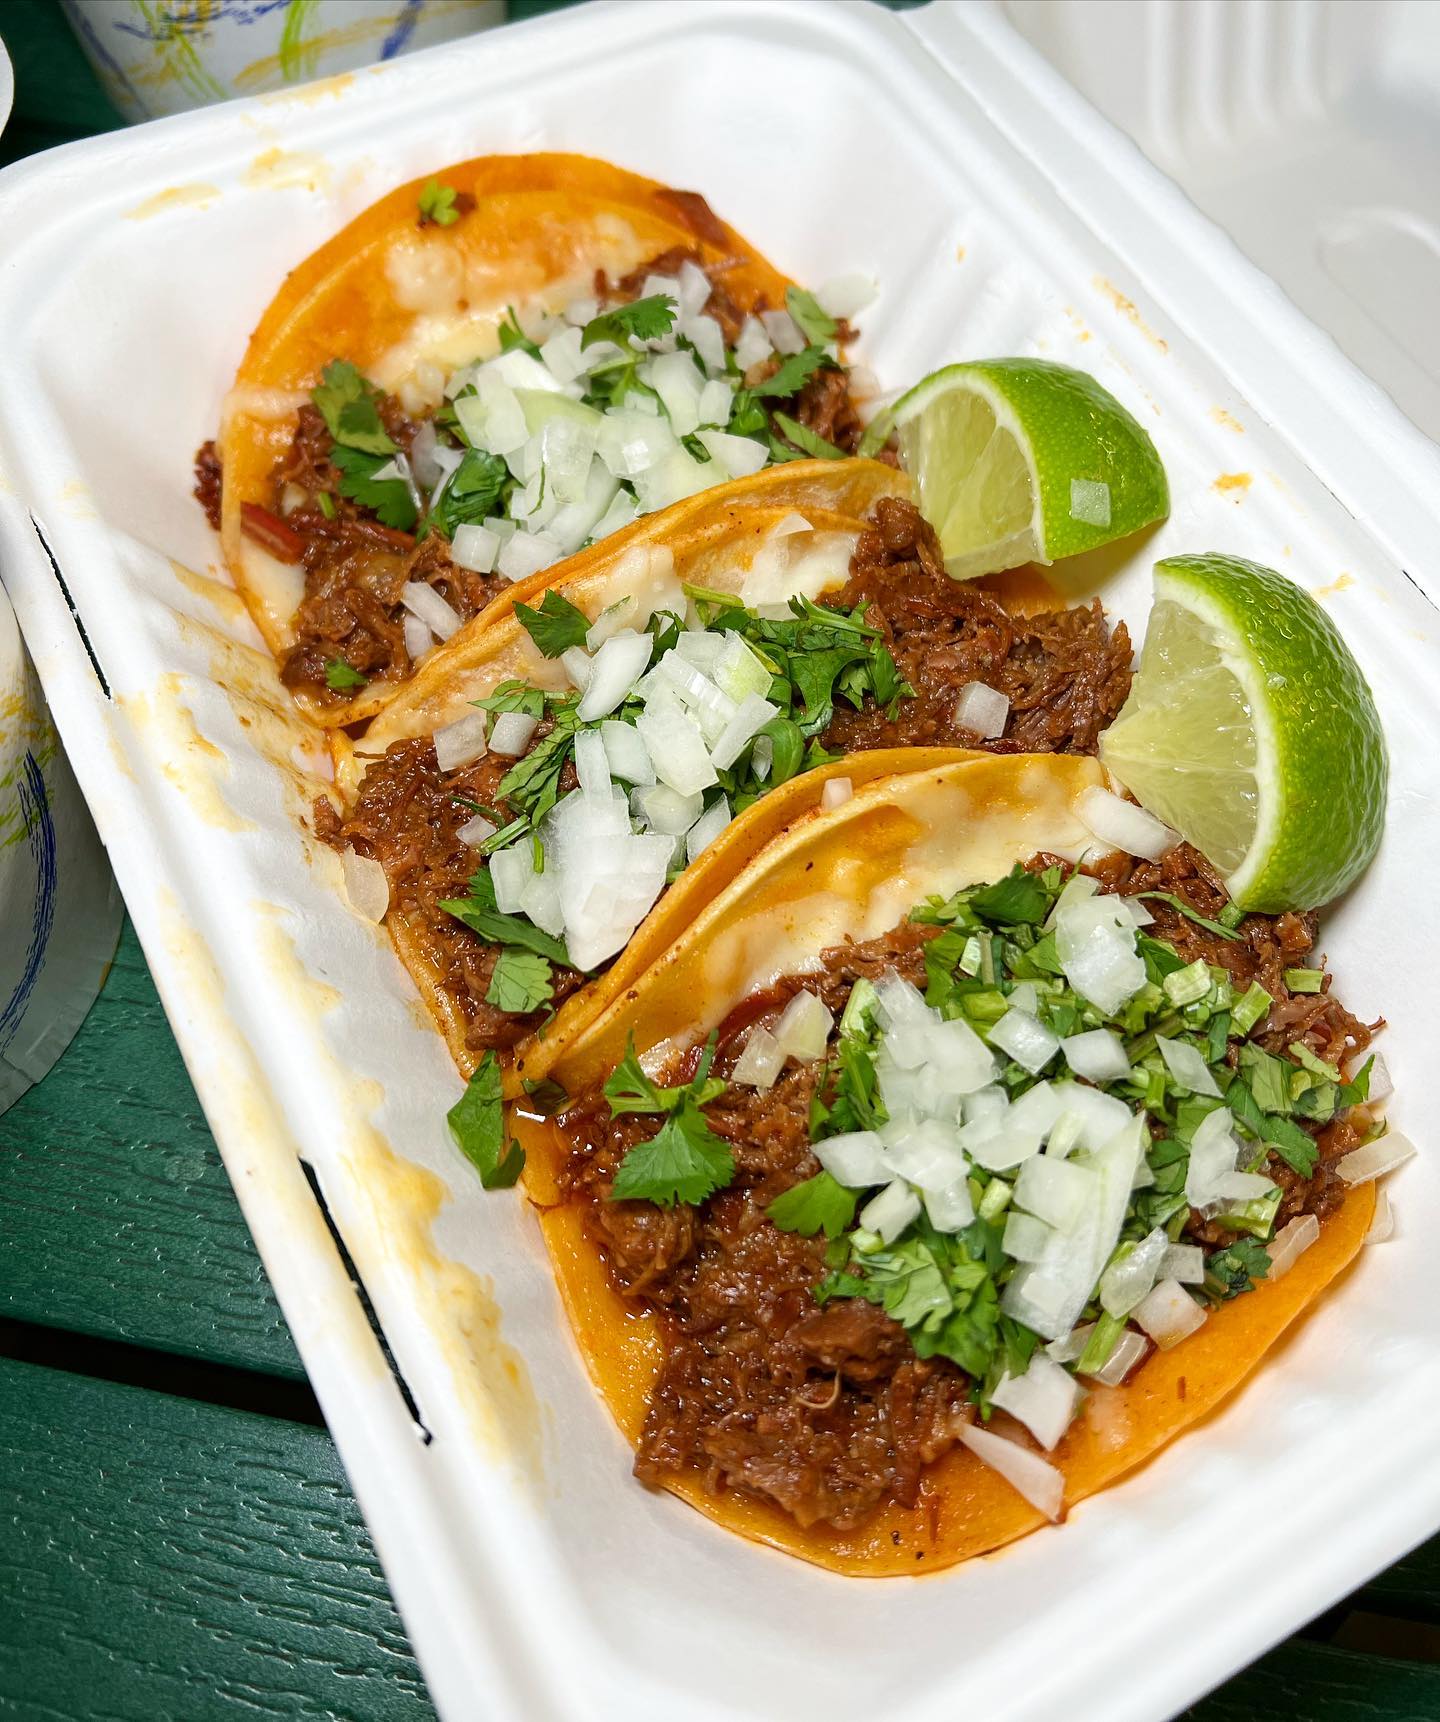 Three Birria tacos in a white to-go box.